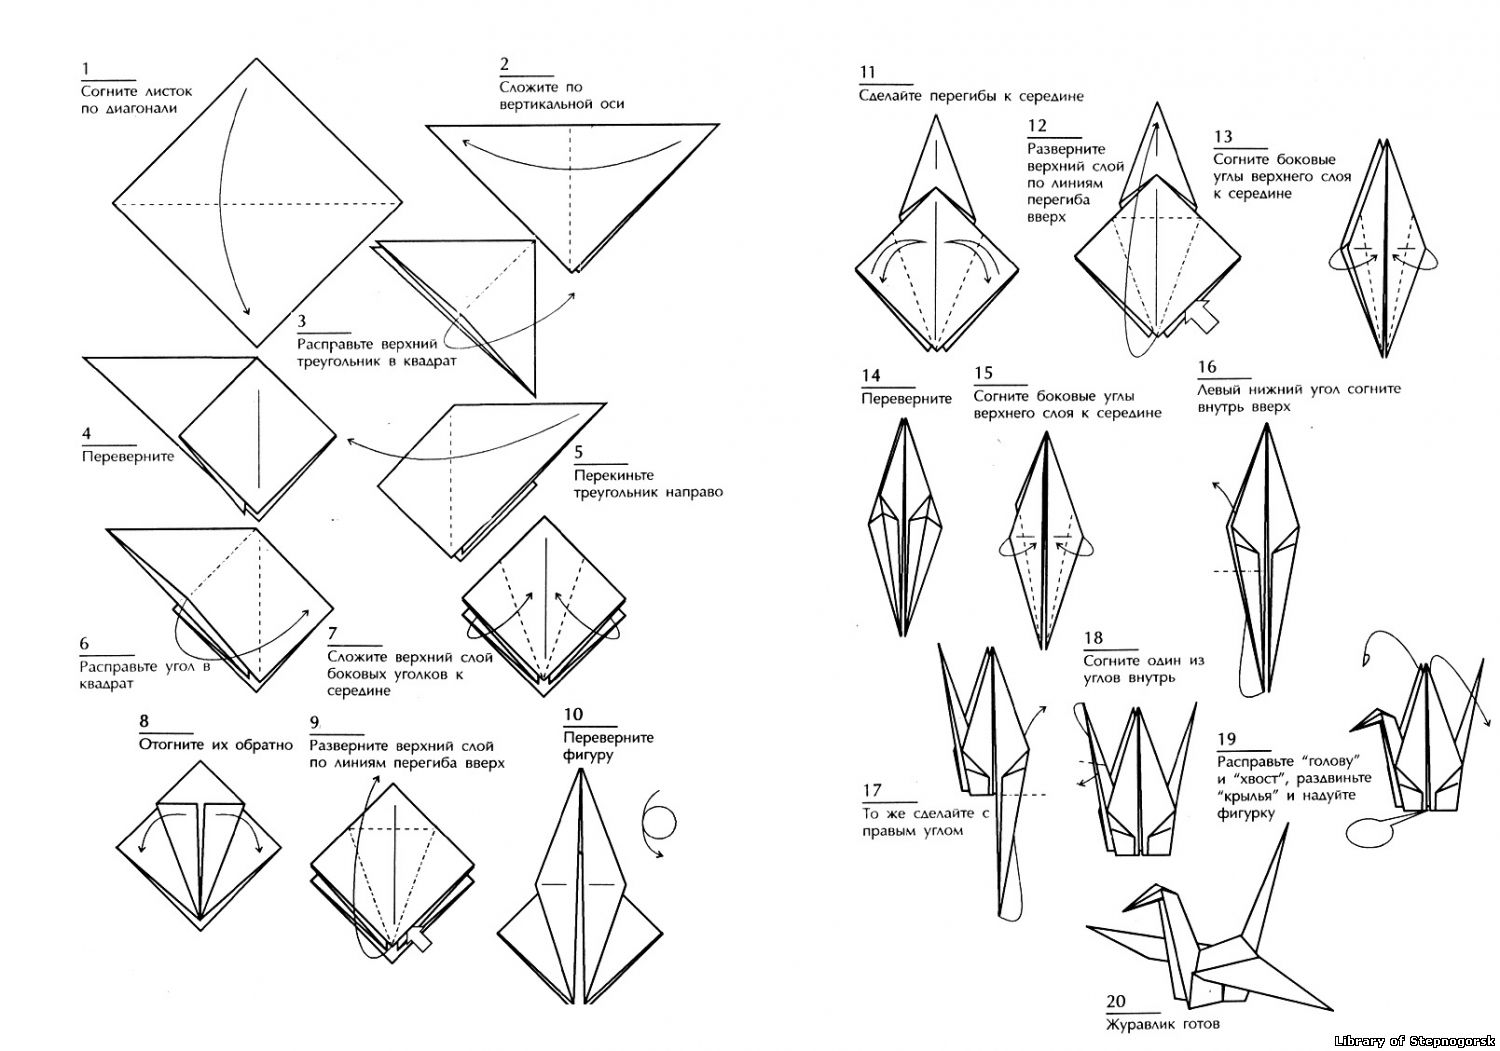 Оригами журавль простой. Оригами из бумаги Журавлик схема для начинающих. Схема сборки журавлика оригами. Оригами из бумаги для начинающих Журавлик схема пошагово. Японский Журавлик схема сборки.